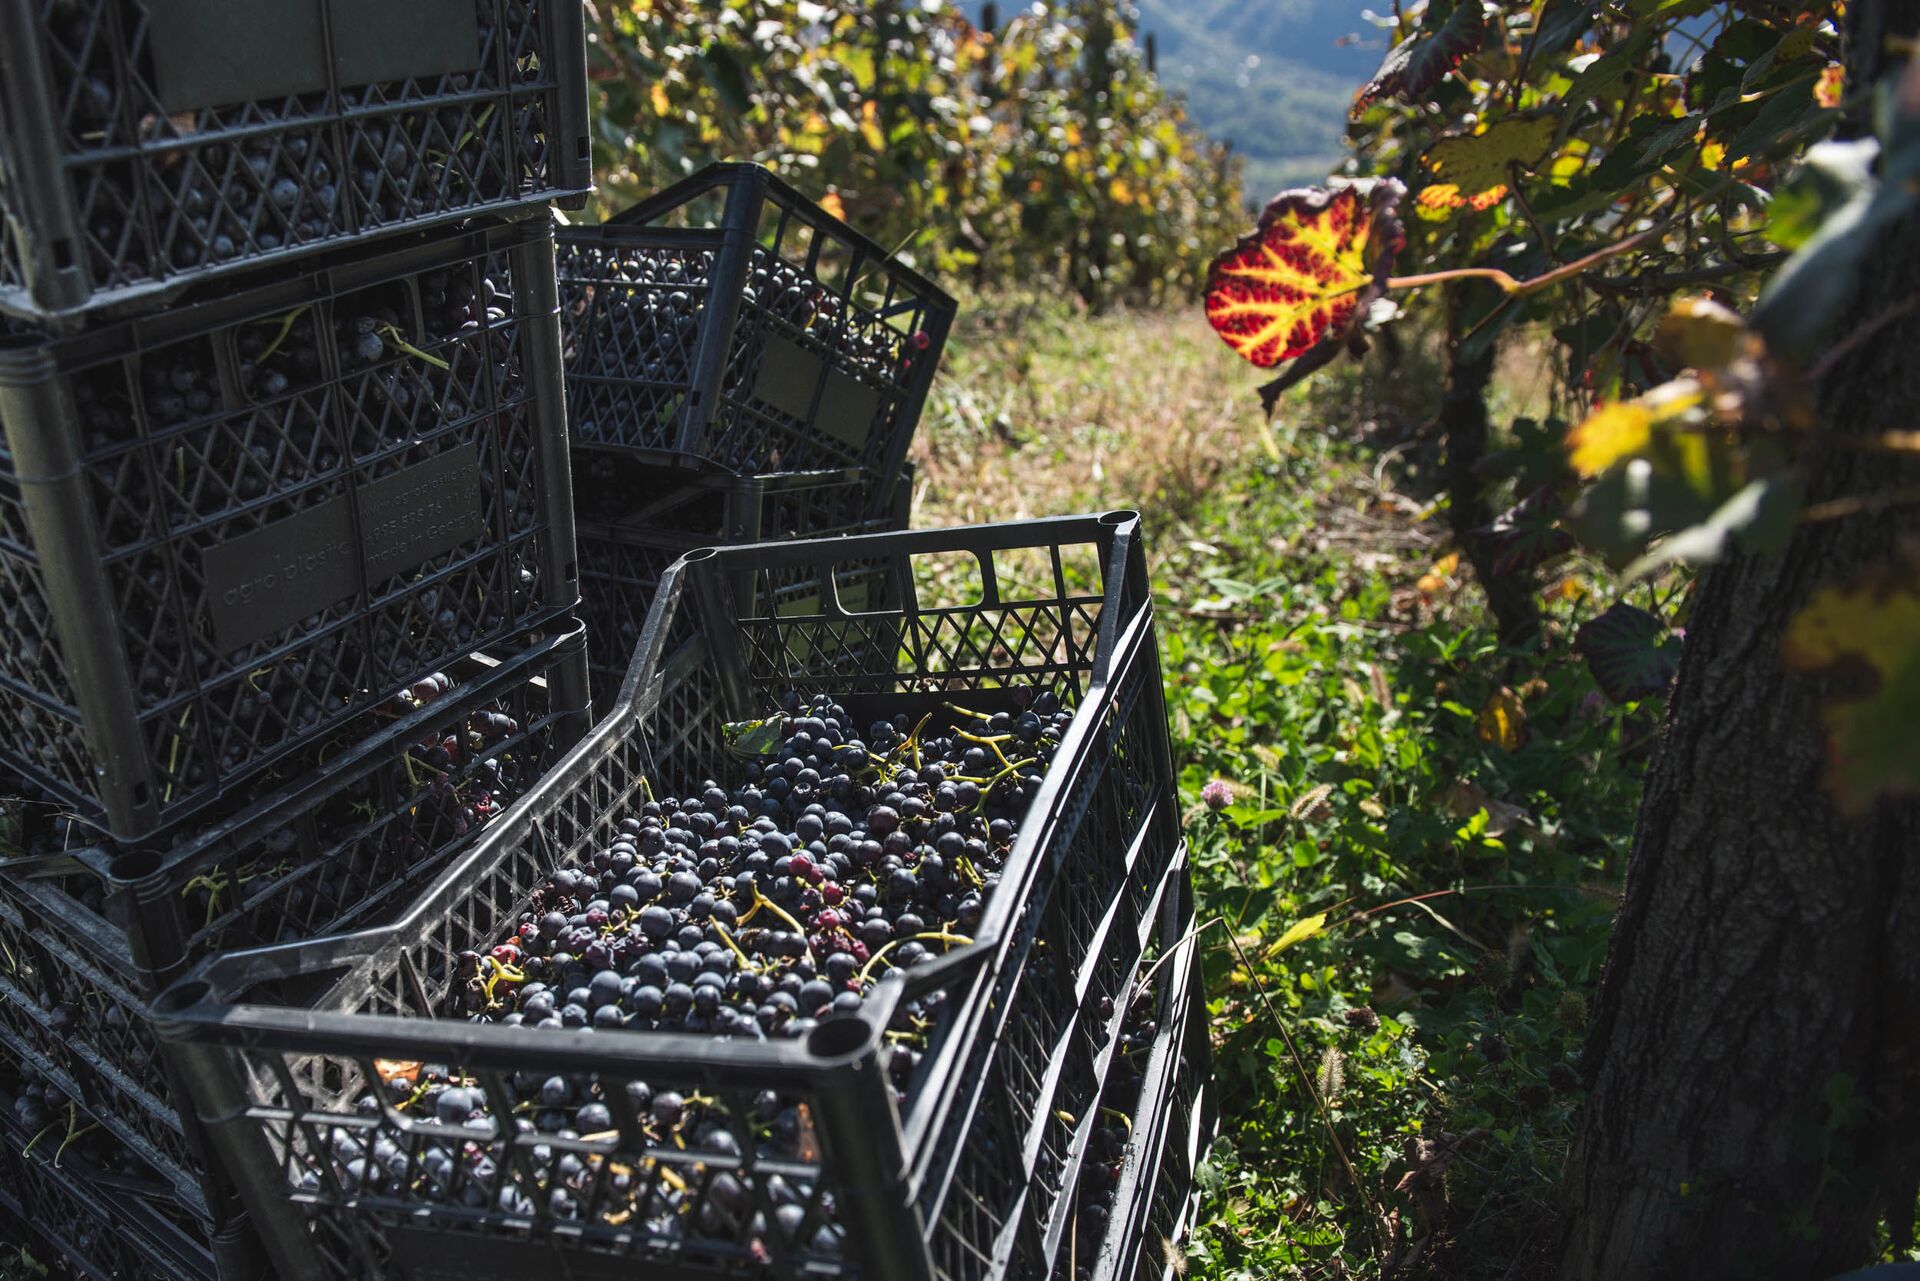 Сбор урожая винограда ртвели в высокогорном регионе Рача  - Sputnik Грузия, 1920, 05.10.2022